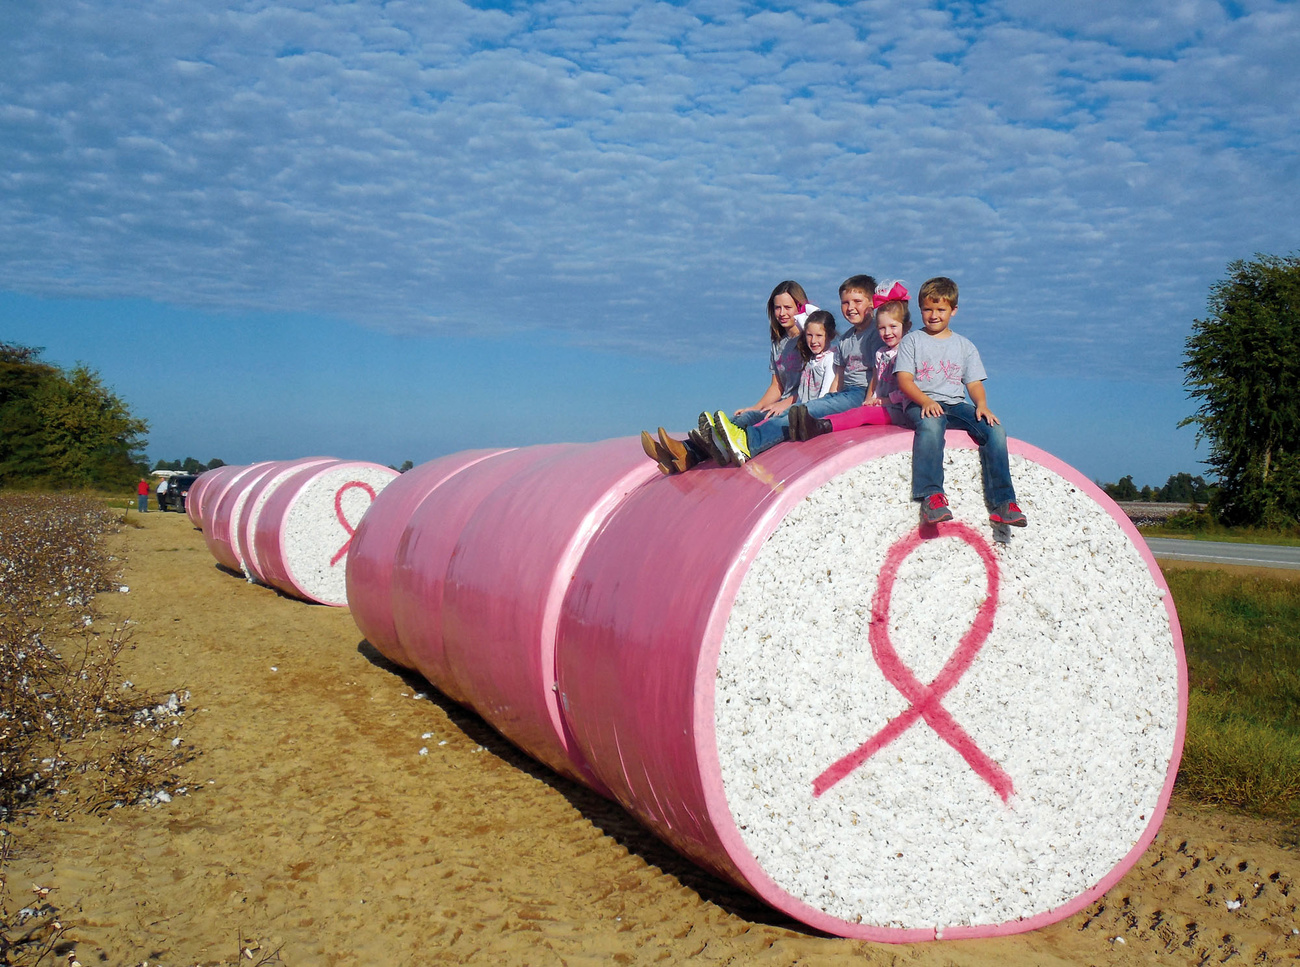 在美国，乳腺癌早筛的宣传活动从不低调，2013年密苏里州(Missouri)这片棉花地上的设计就是如此。